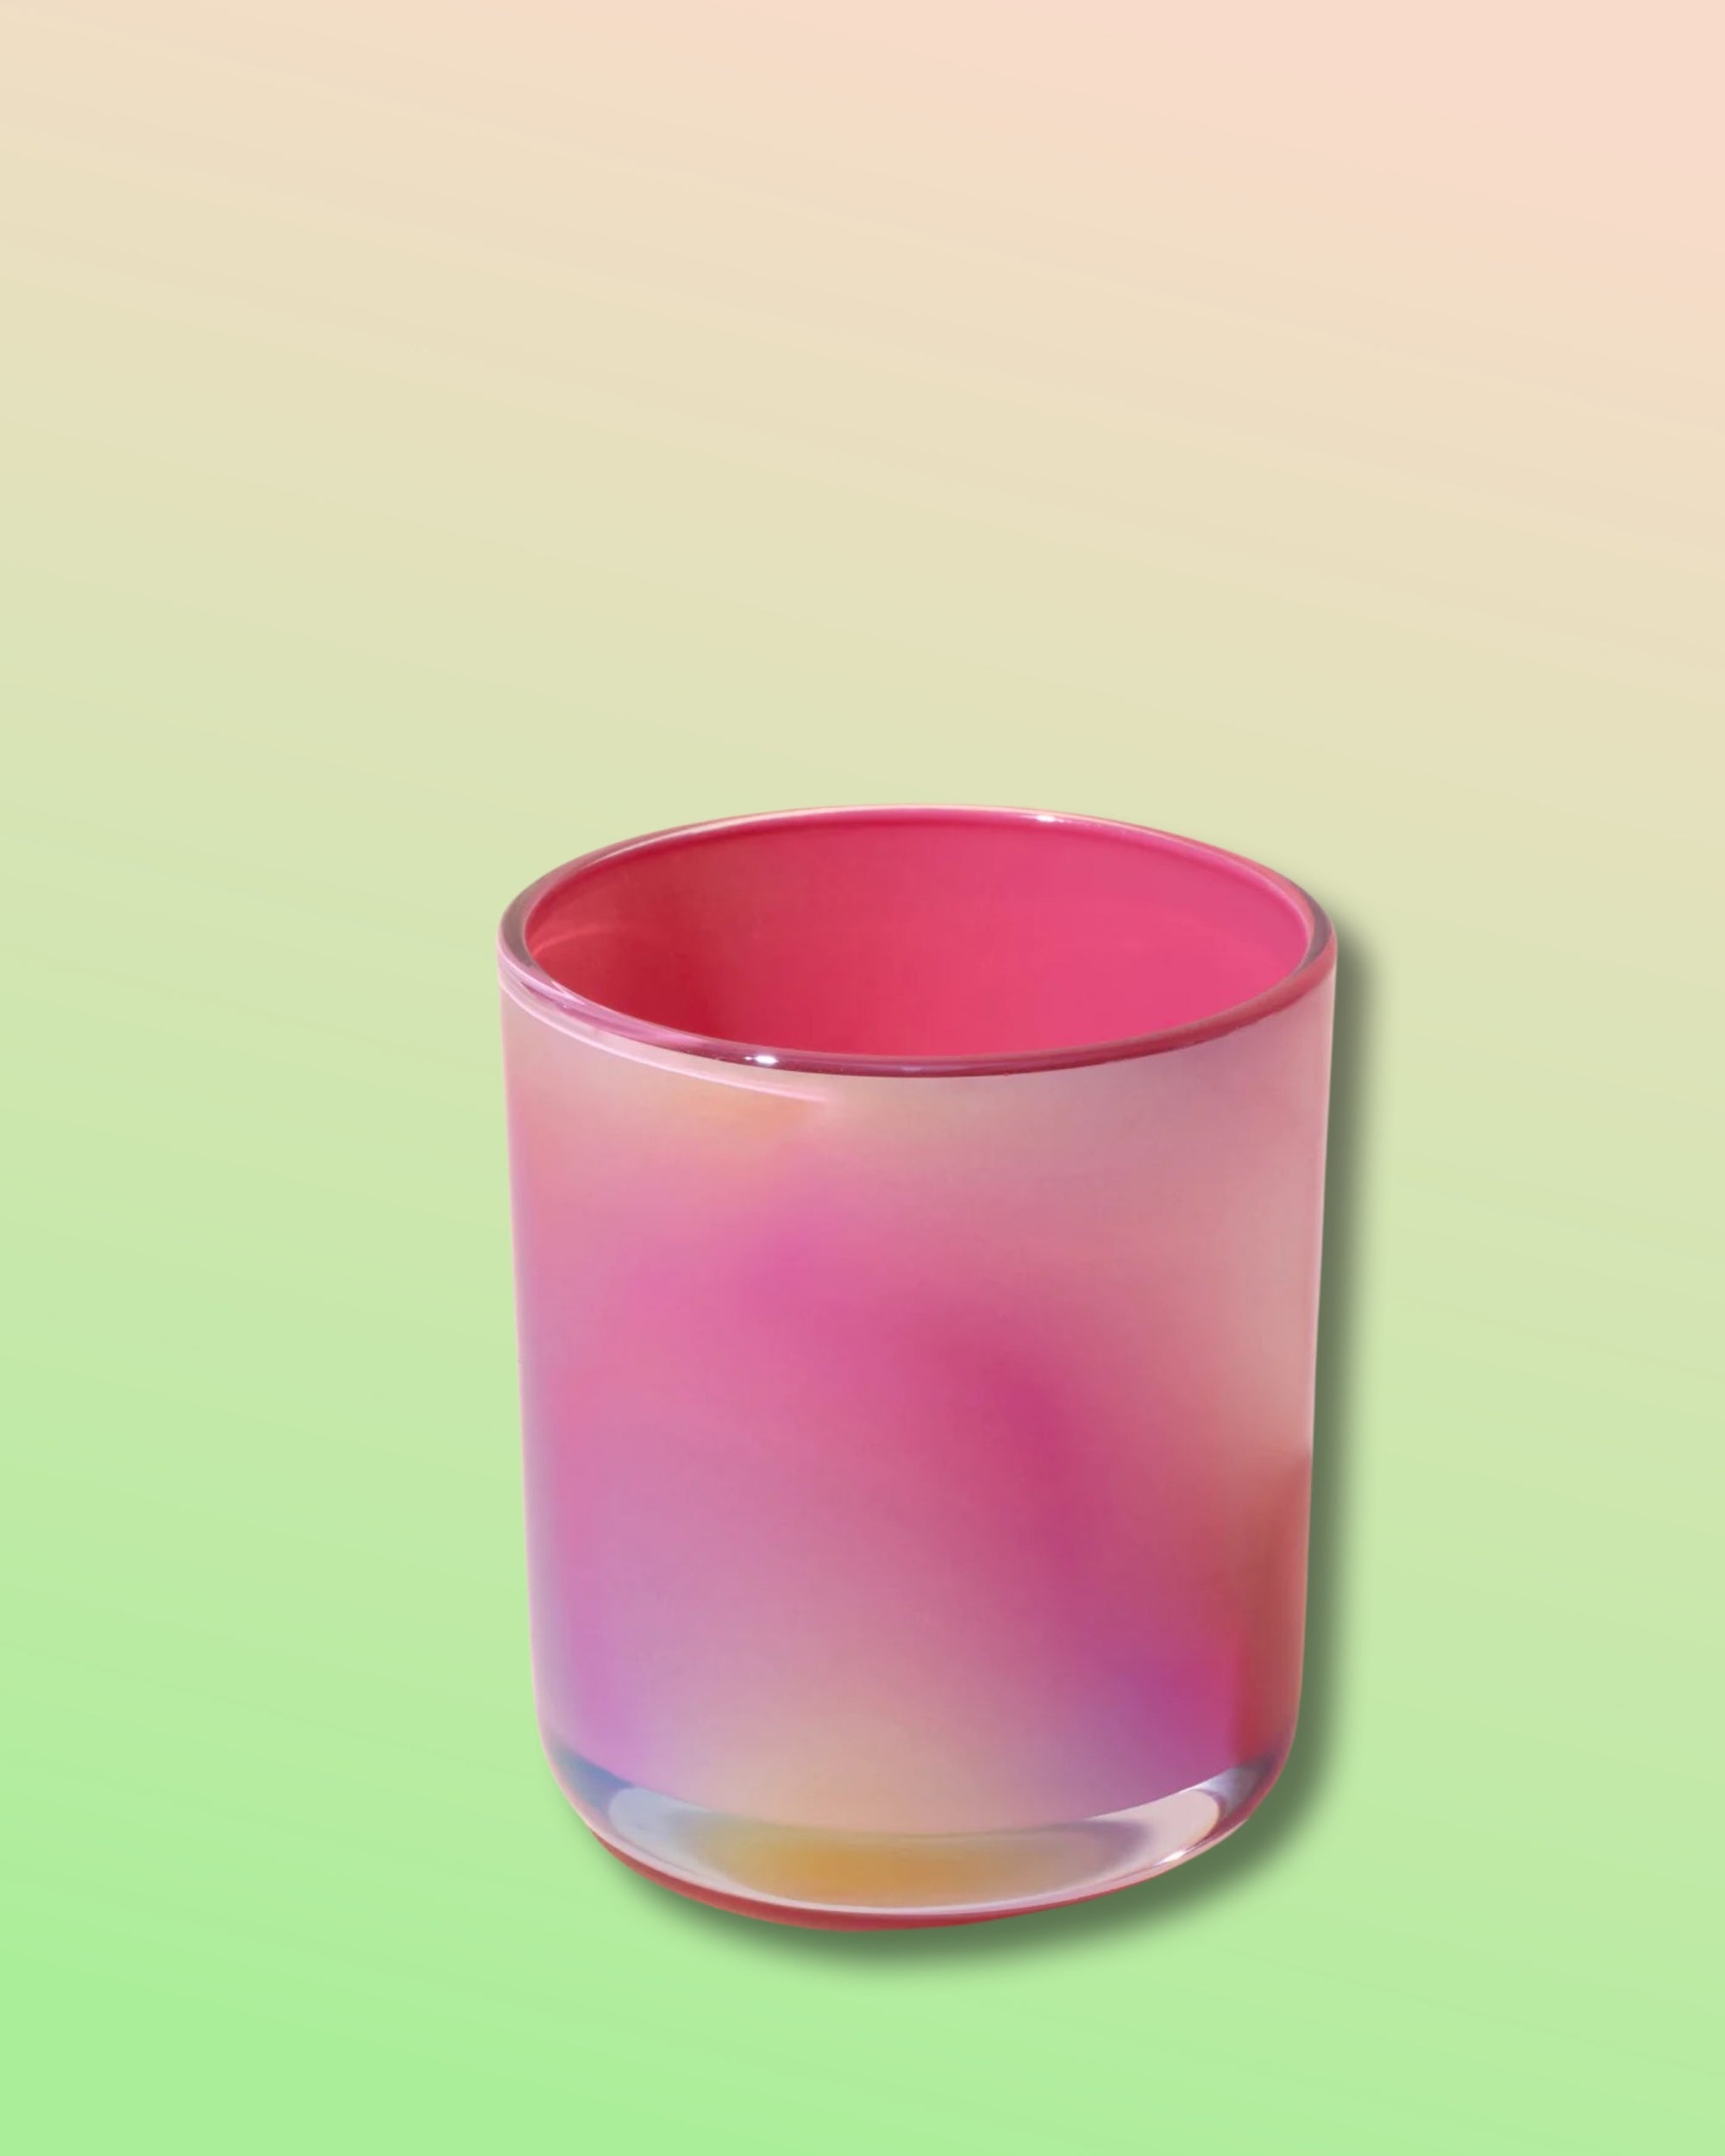 Iridescent Glass Planter - Flamingo